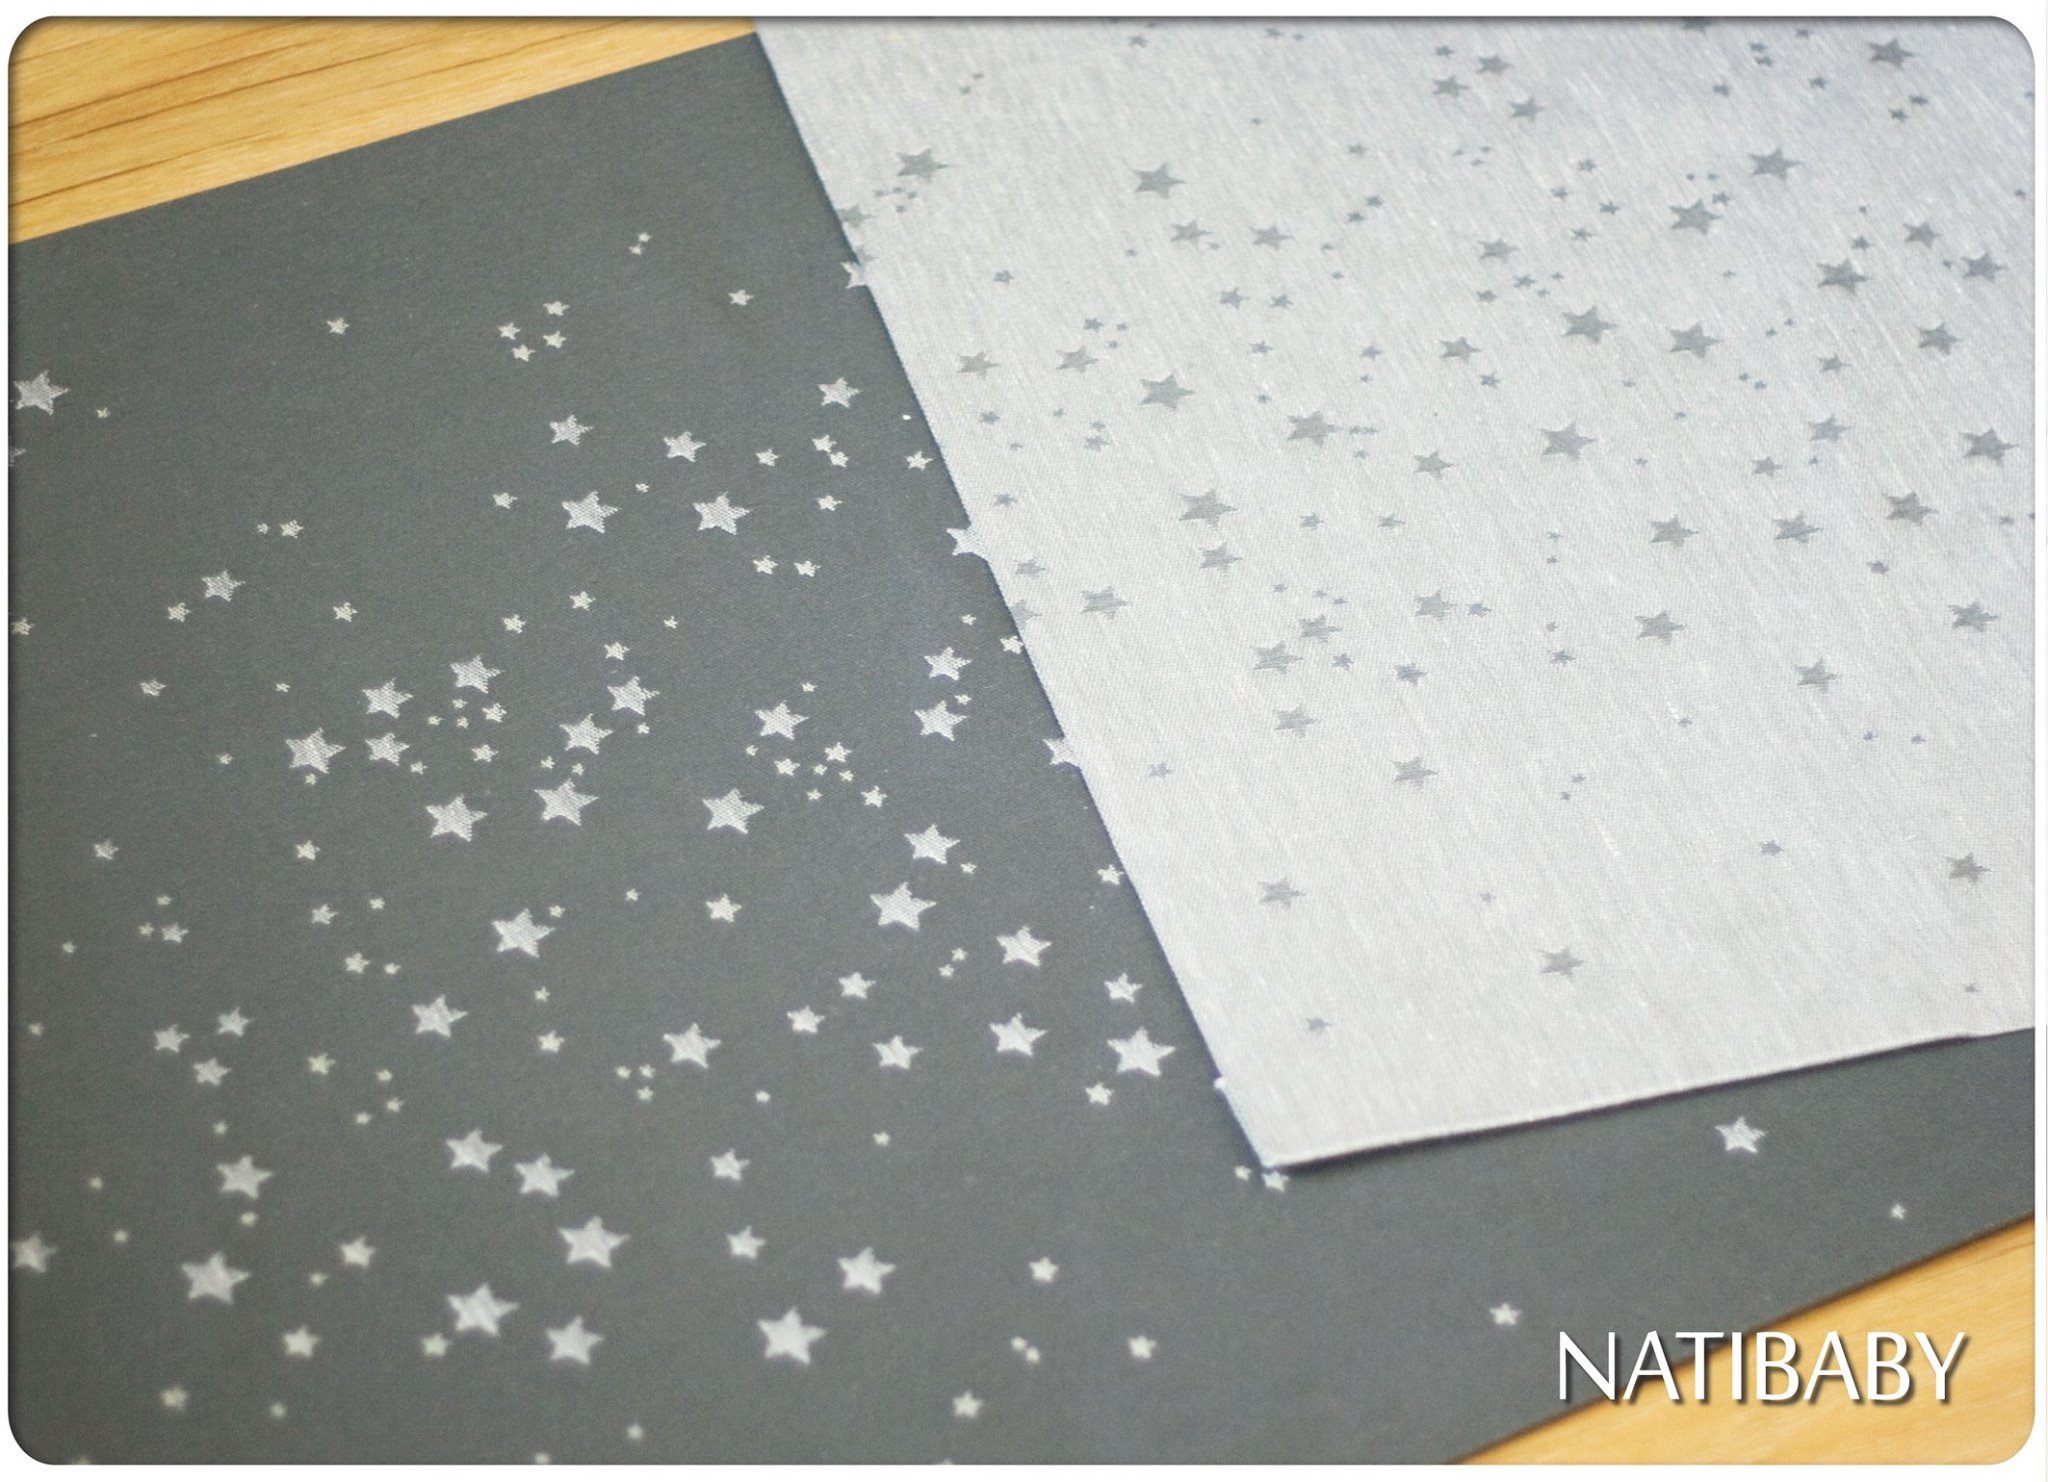 Natibaby Stardust Shades of Grey (merino, лен) Image